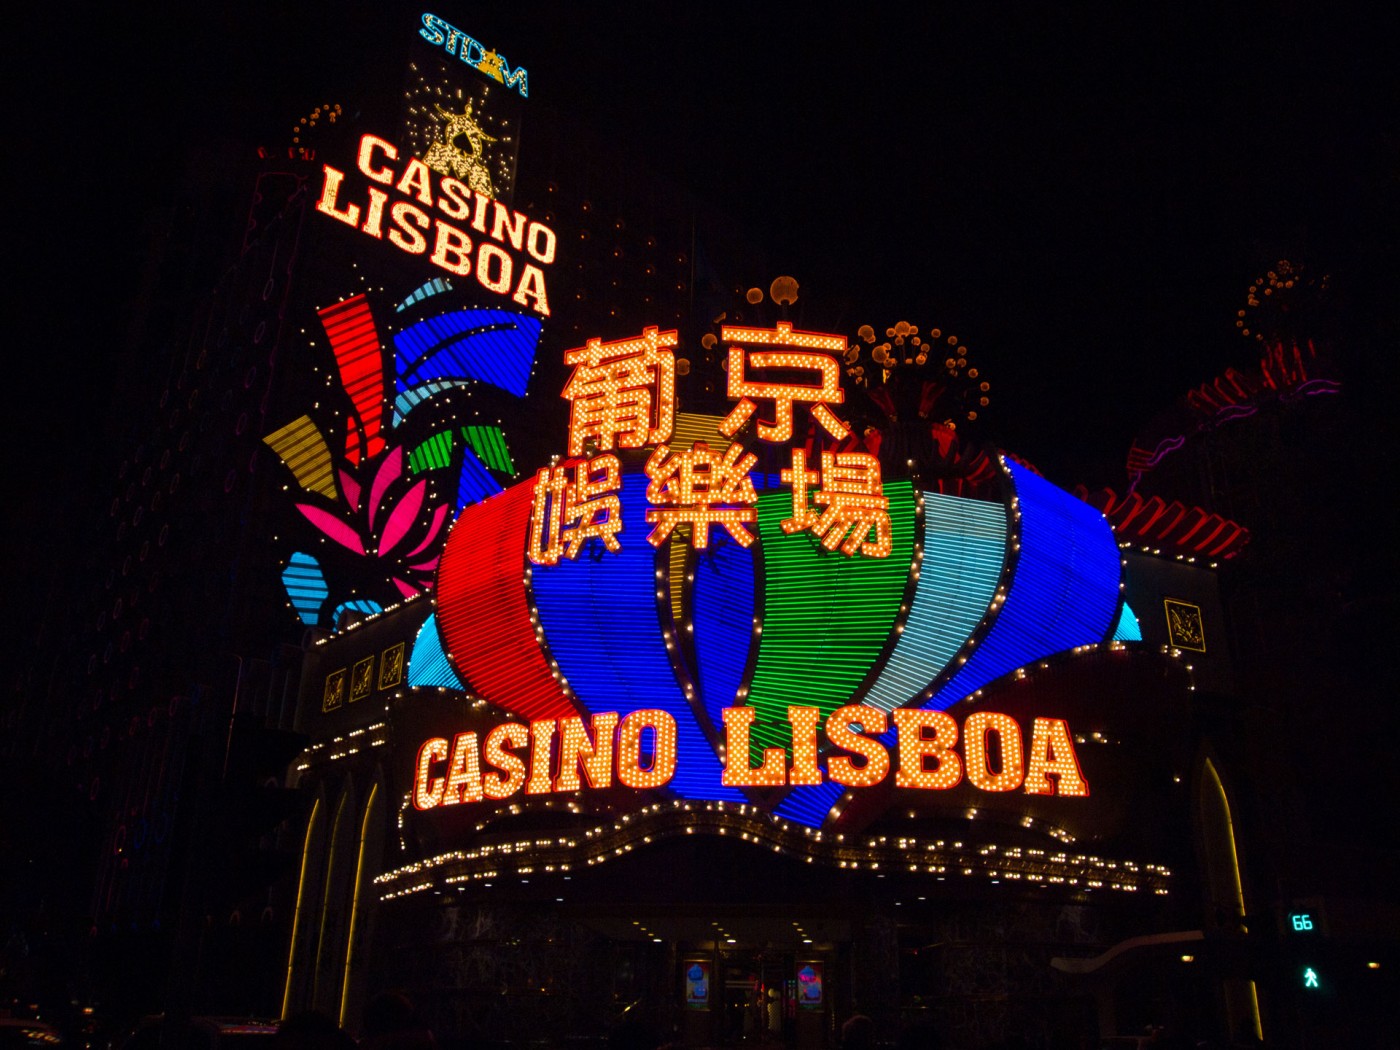 Das Casino Lisboa in Macau